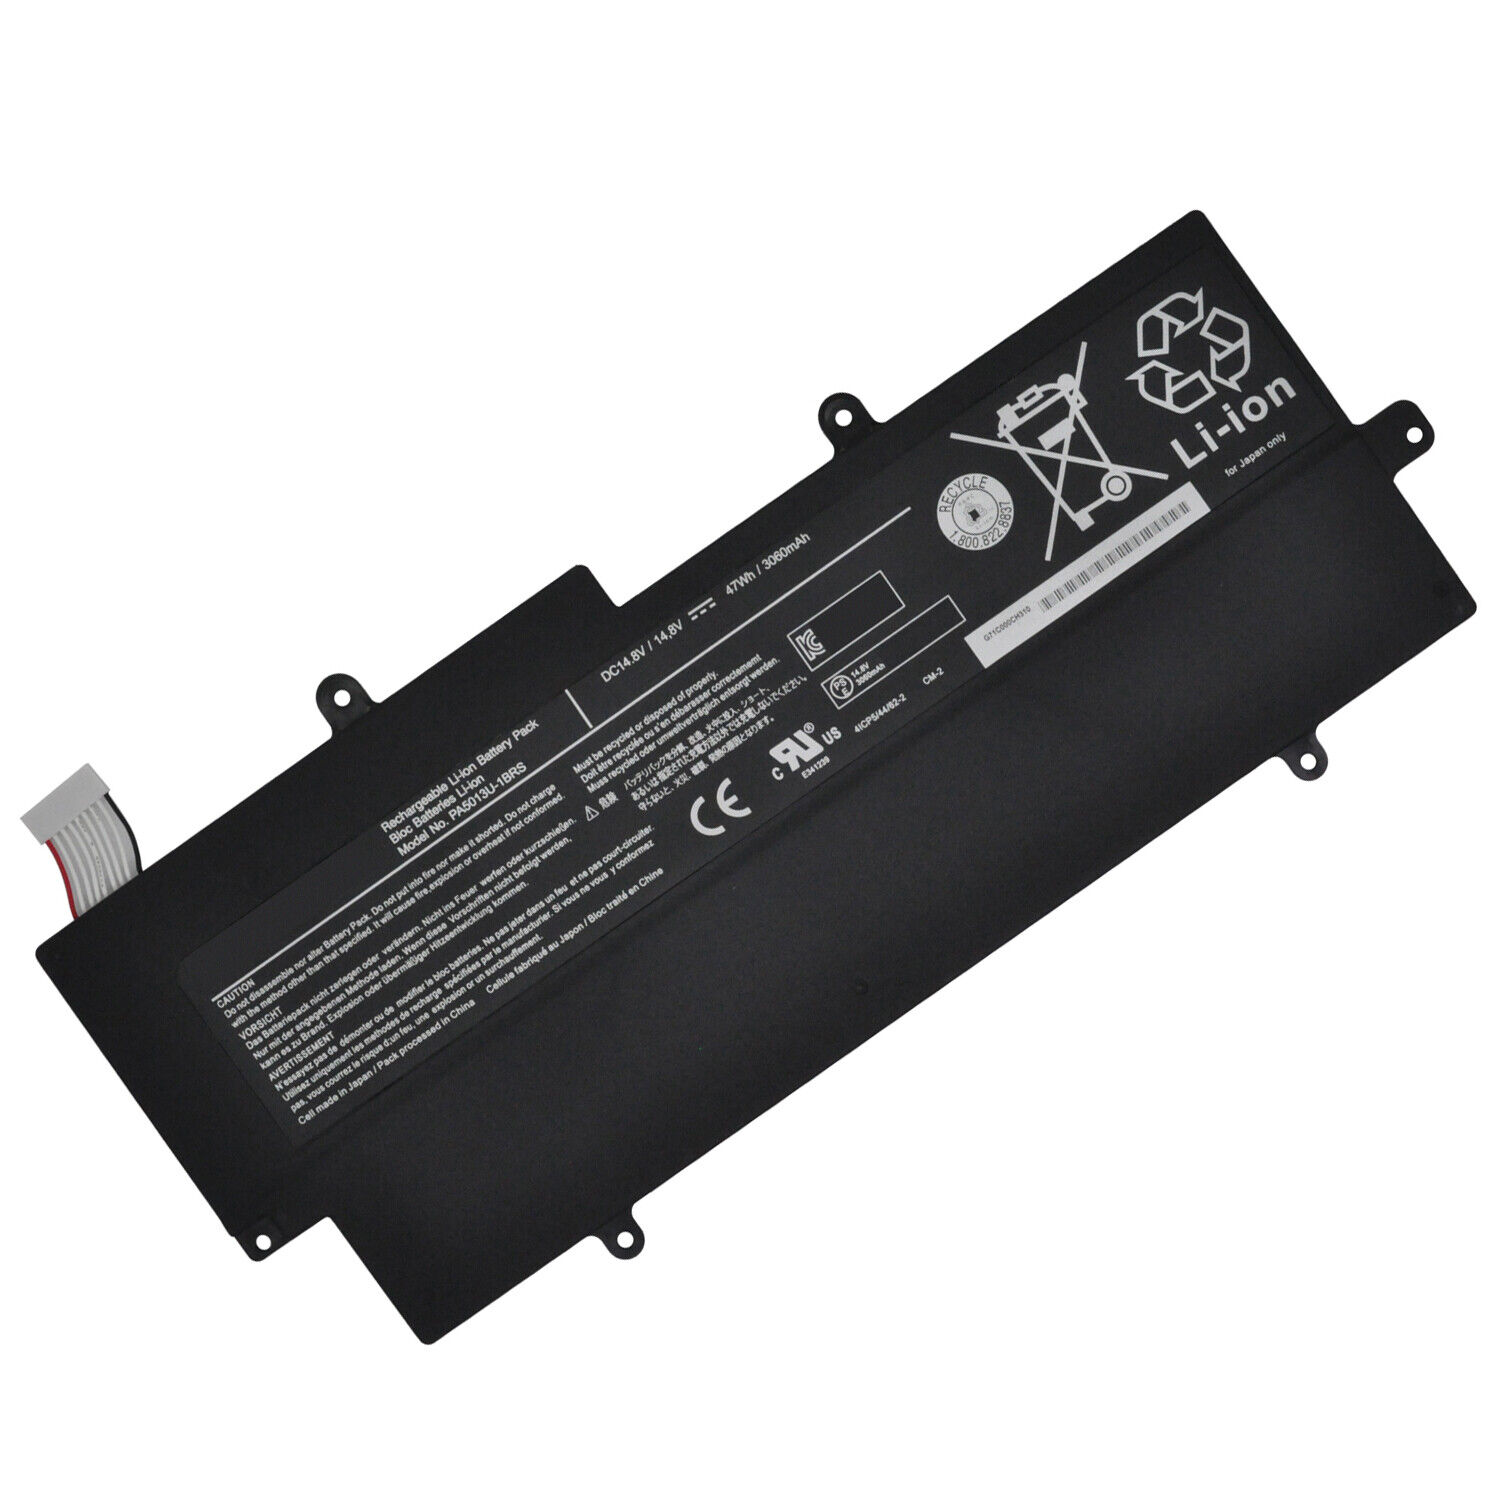 Genuine PA5013U-1BRS battery for Toshiba Portege Z830-S8301 Z830-S8302 Z830-K08S